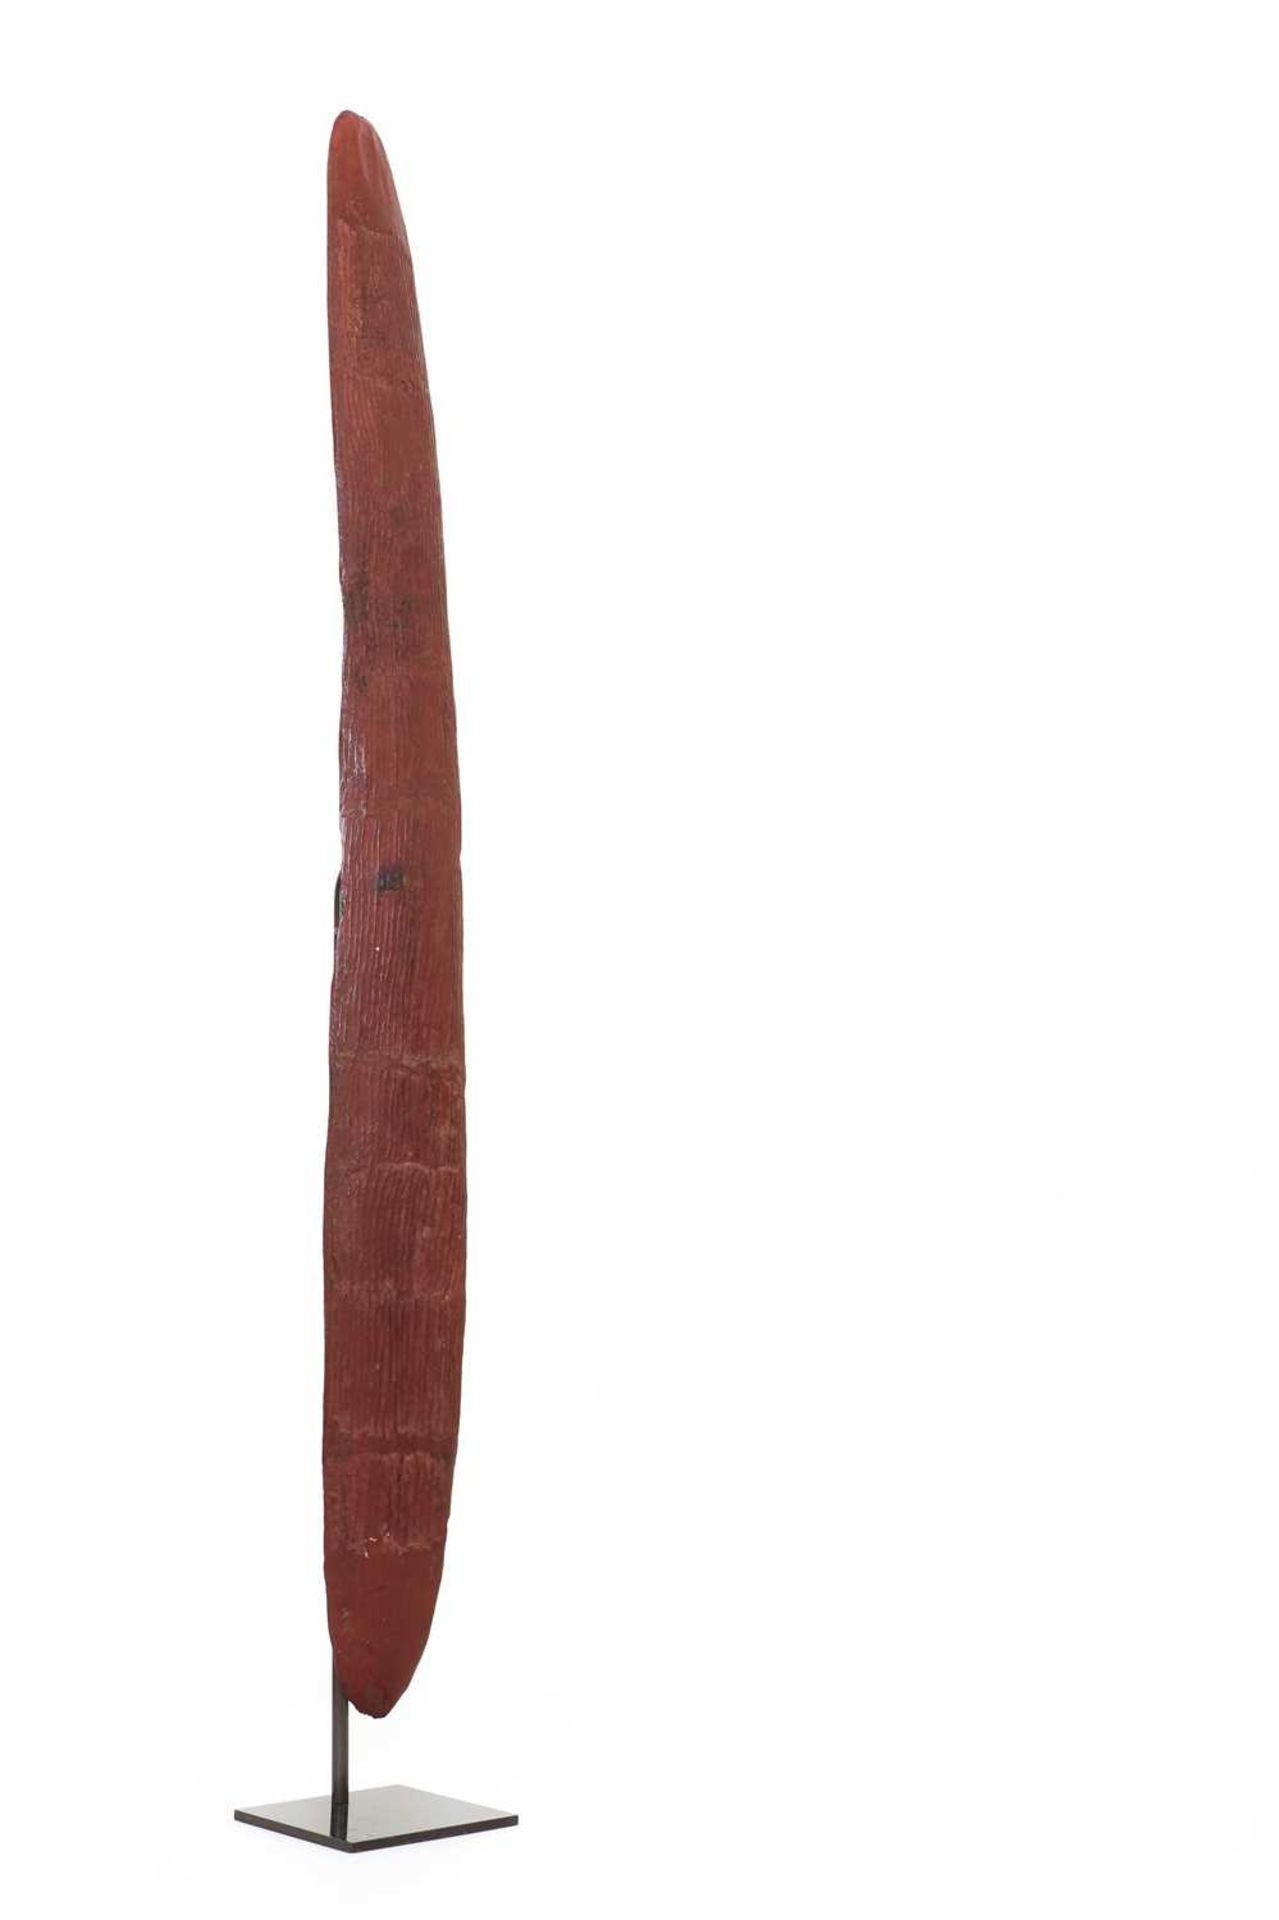 An Aboriginal wooden shield